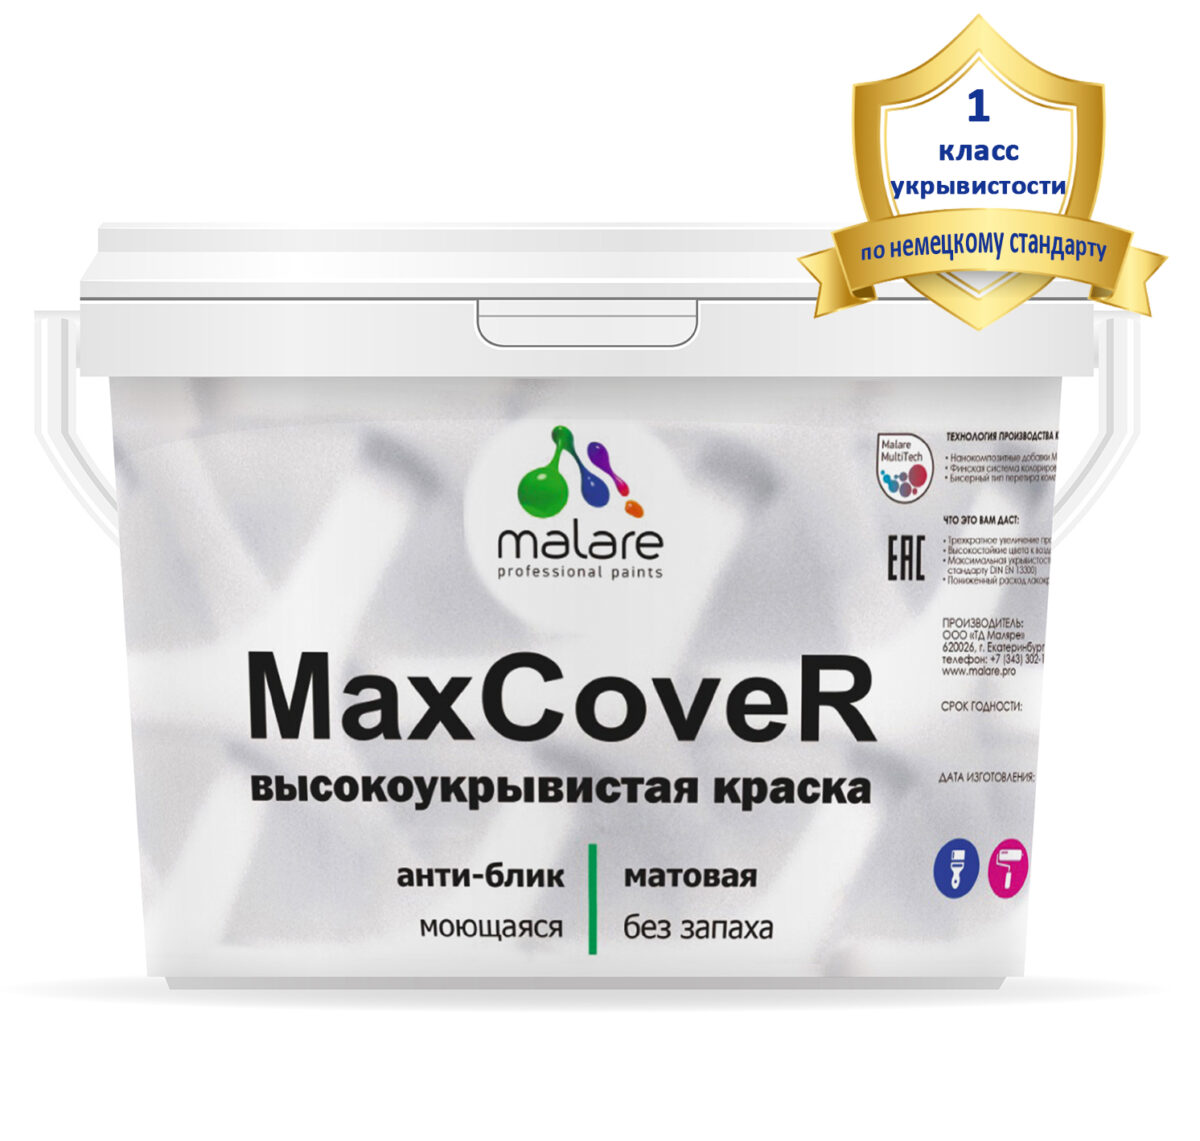 Краска Malare MaxCover высокоукрывистая для стен, обоев и потолка, анти-блик эффект, без запаха, моющаяся, матовое покрытие (9 л = 13 кг).